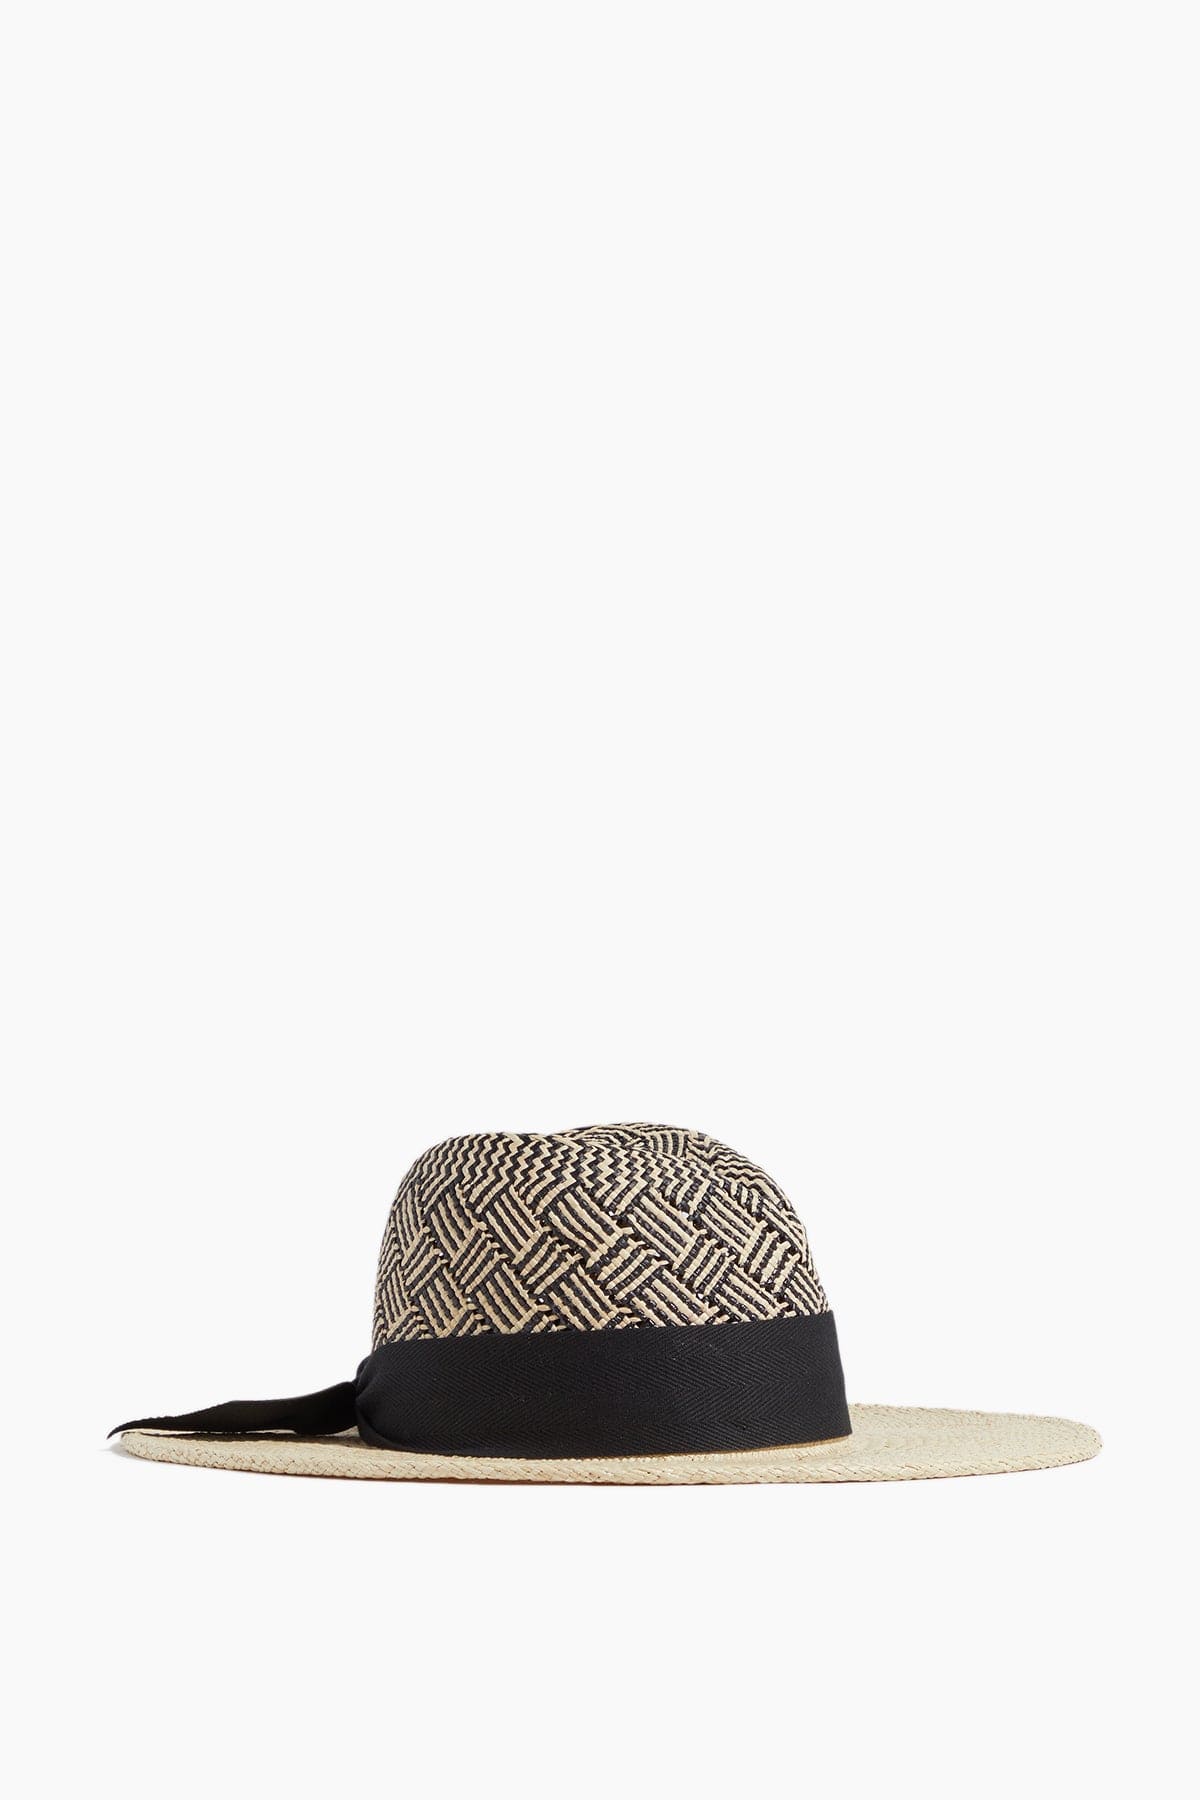 Gigi Burris Hats Jeanne Patterned Hat in Natural/Black